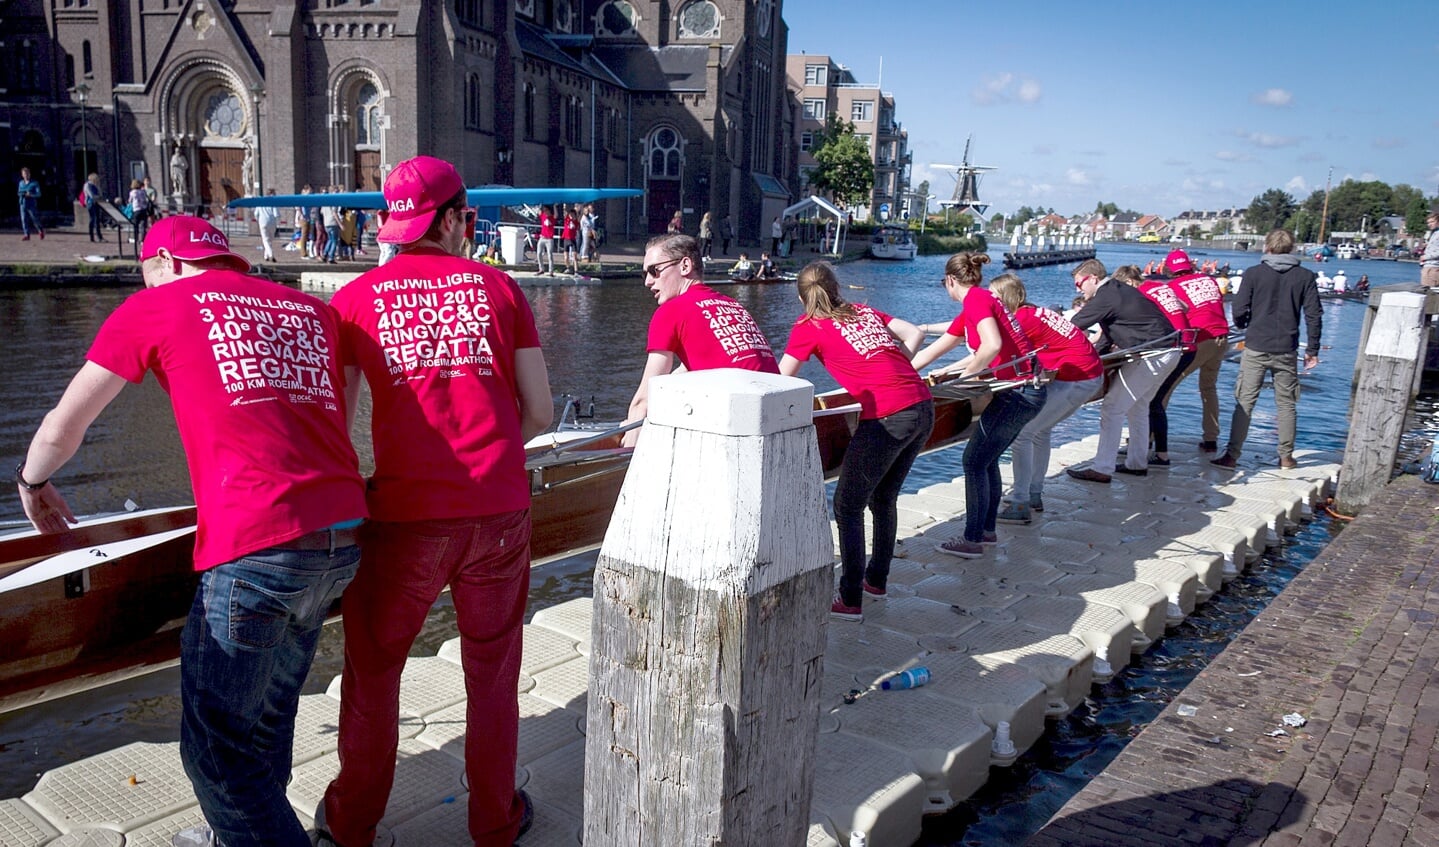 De boten van de deelnemers moeten in Leidschendam langs de sluis getild worden om de wedstrijd te kunnen vervolgen (foto: LAGA).